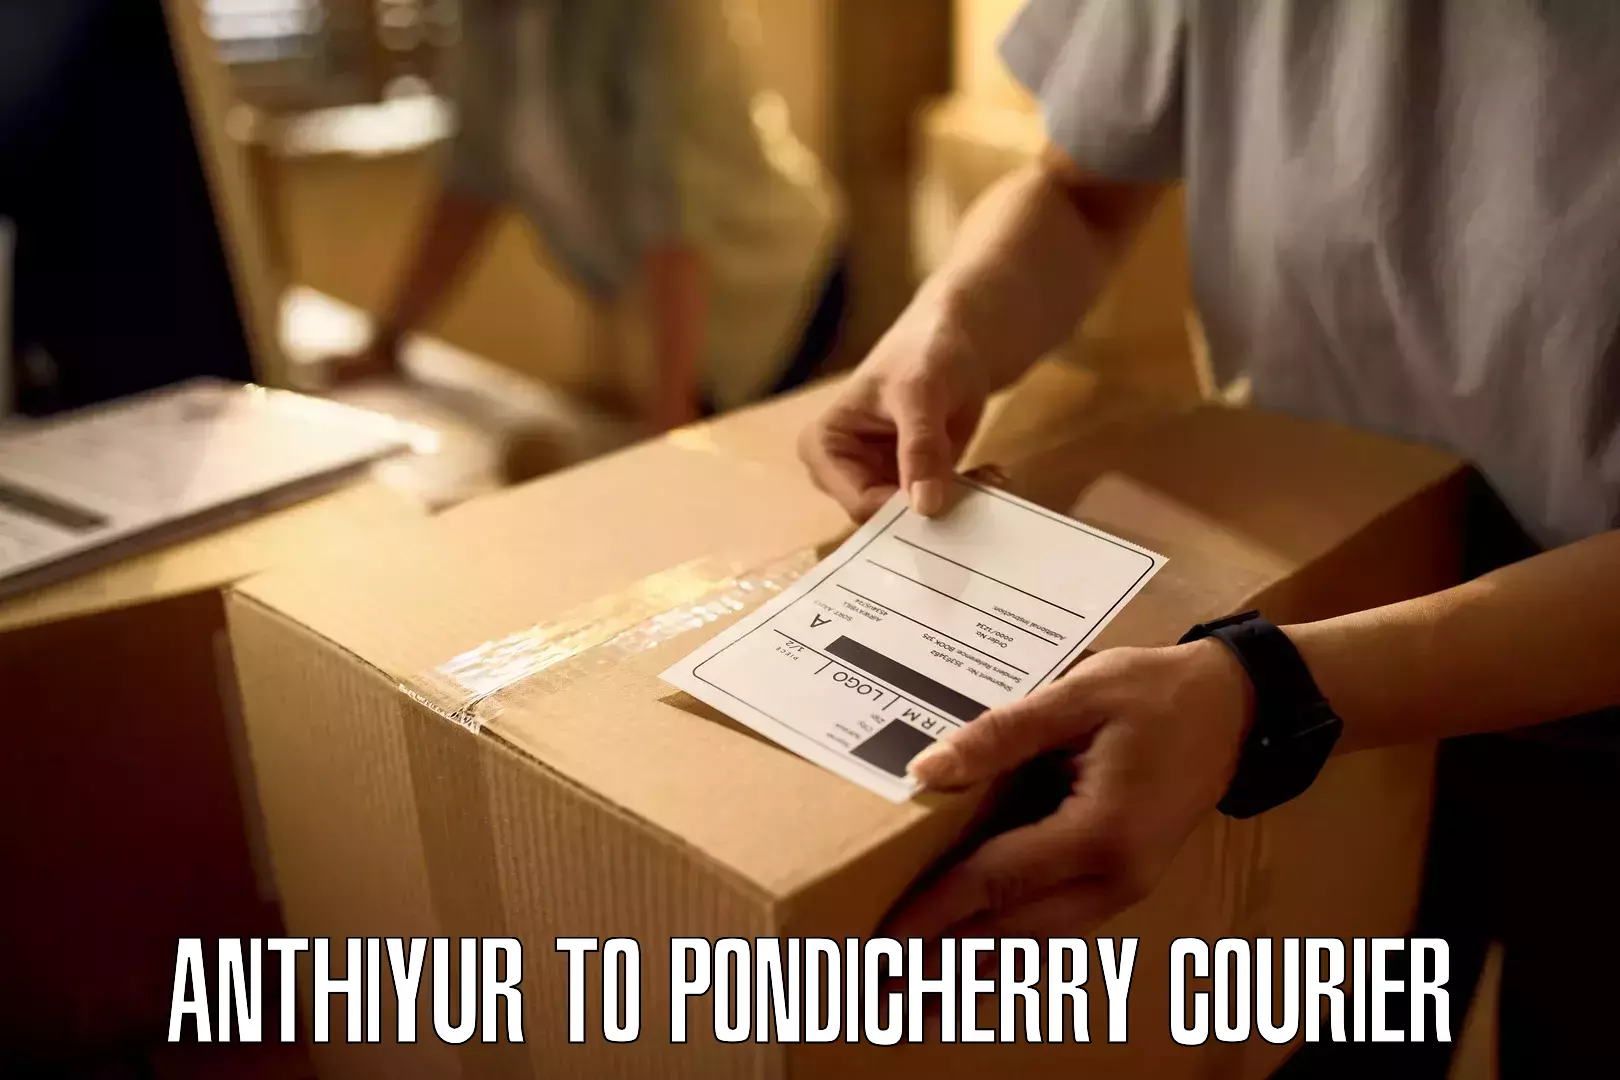 Efficient freight service Anthiyur to Pondicherry